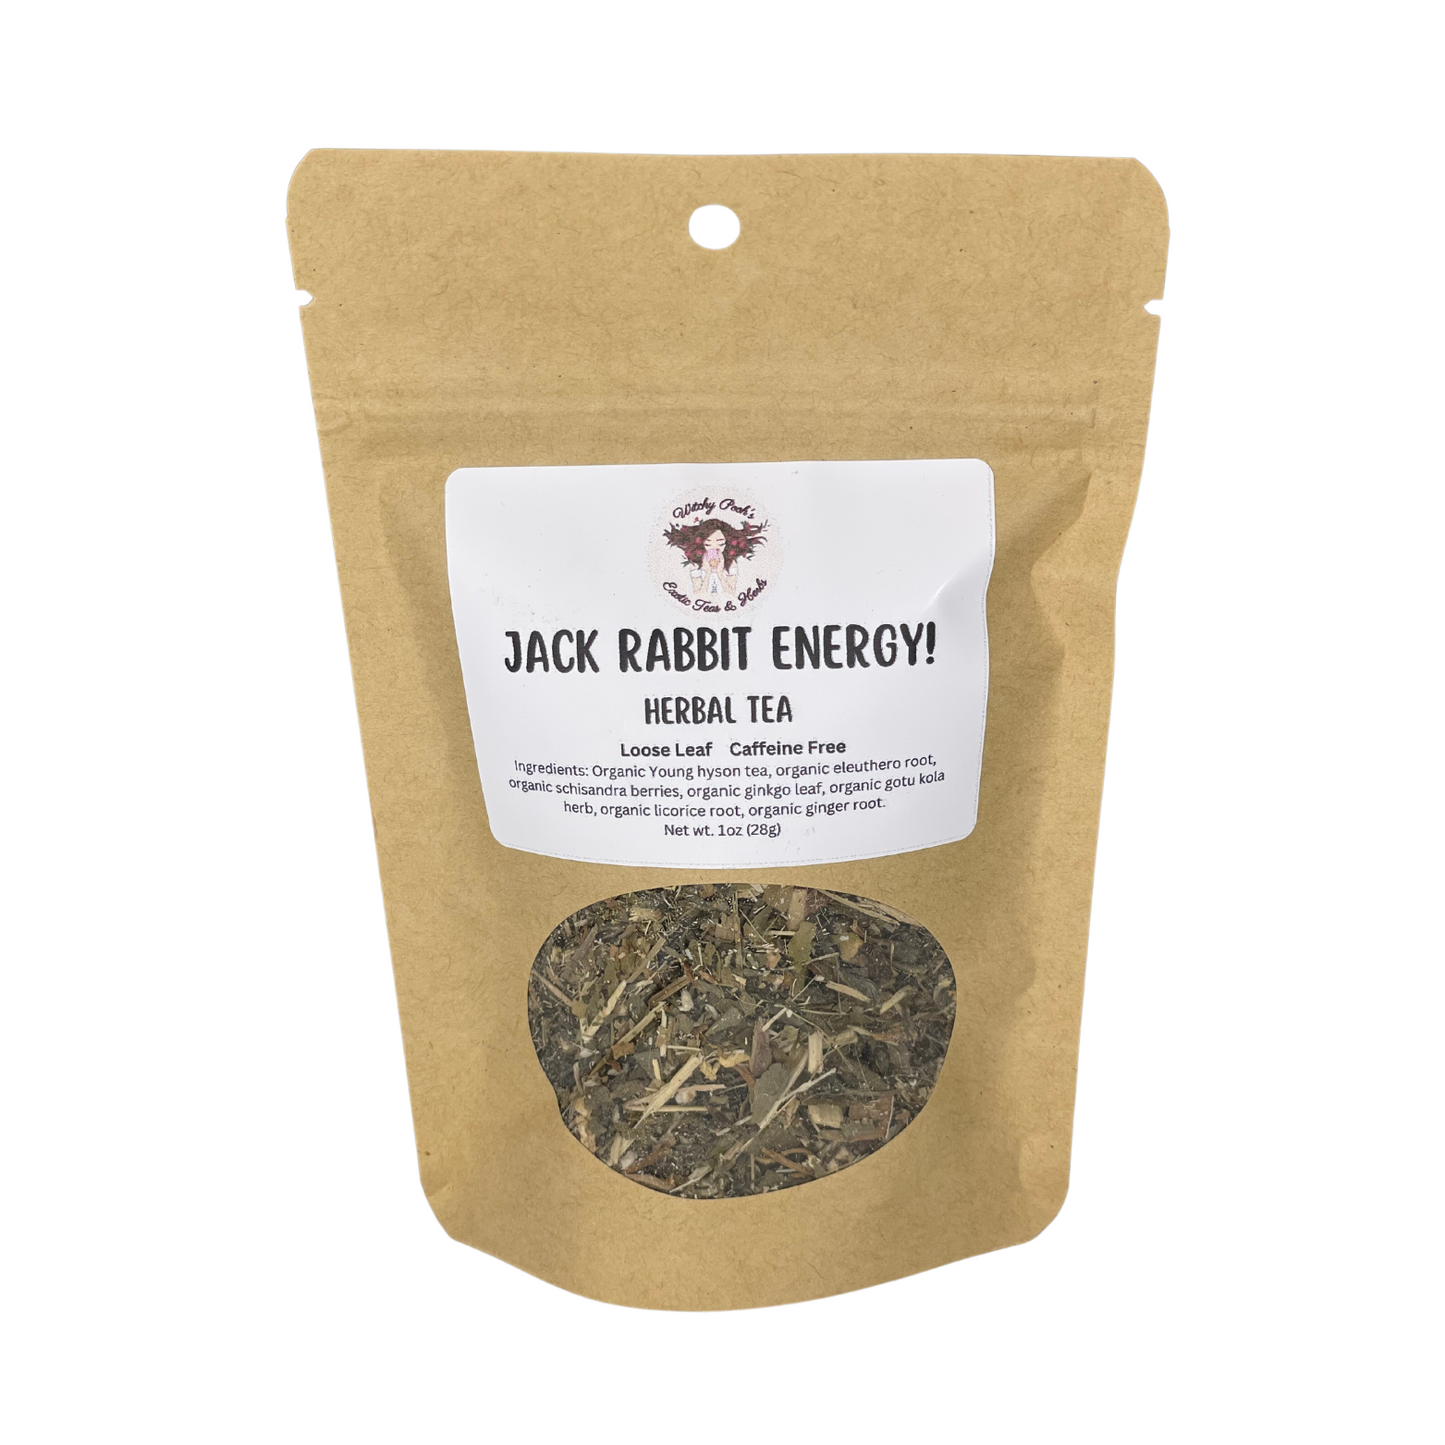 Jack Rabbit Energy! Loose Leaf Functional Herbal Tea, Caffeine Free, Sugar Free Energy Drink